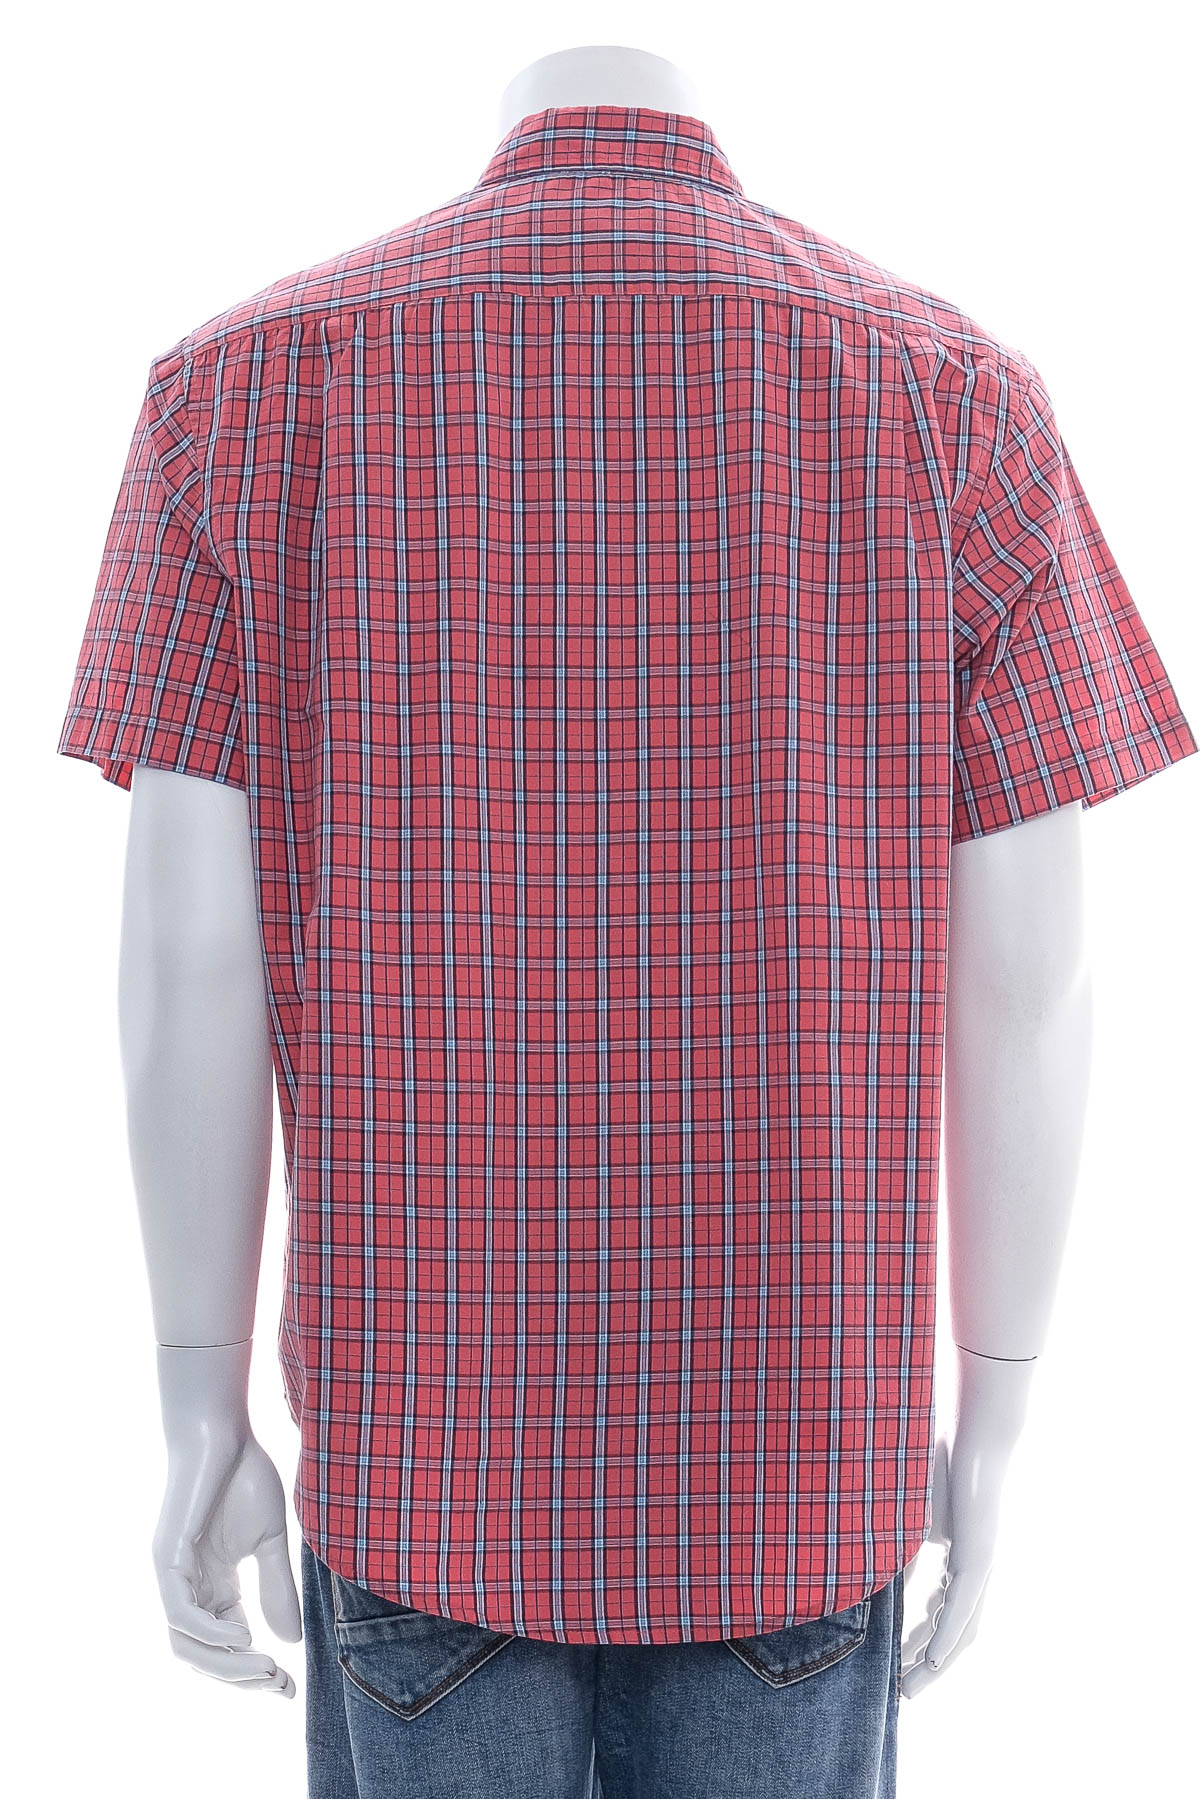 Ανδρικό πουκάμισο - U.S. Polo ASSN. - 1